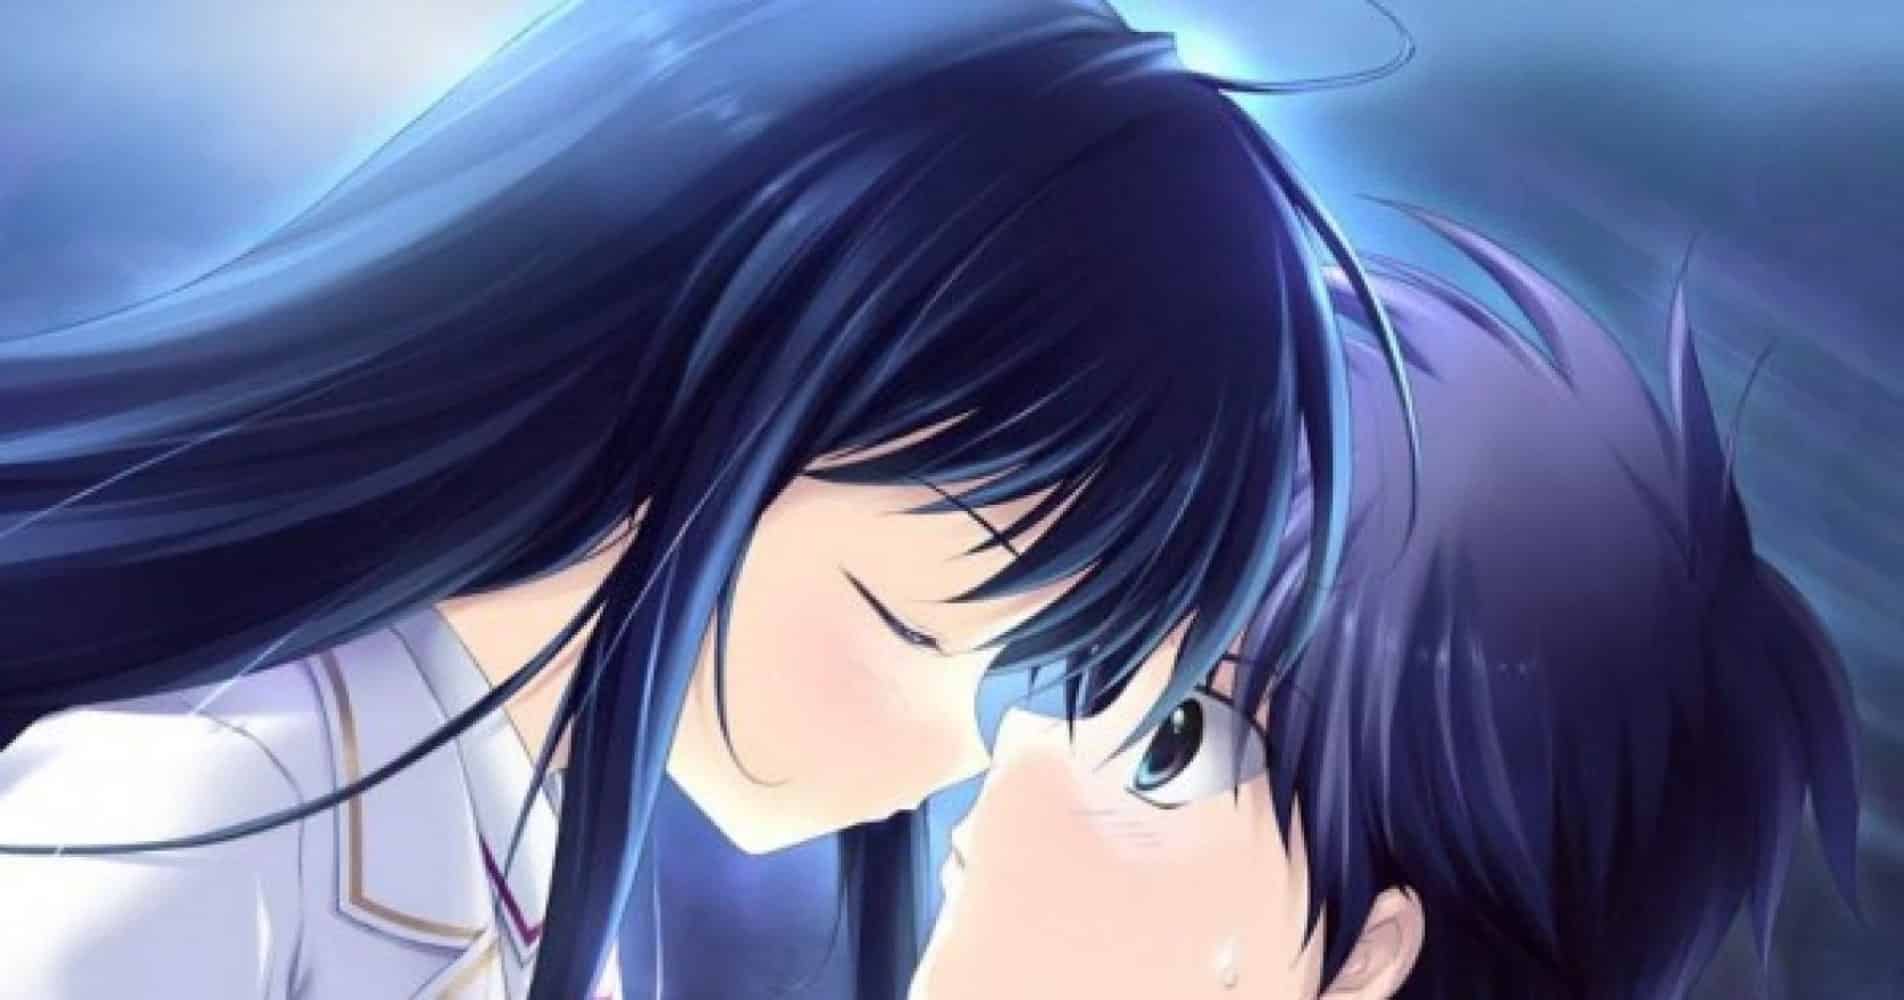 Bức hình Anime cặp đôi chuẩn bị hôn nhau